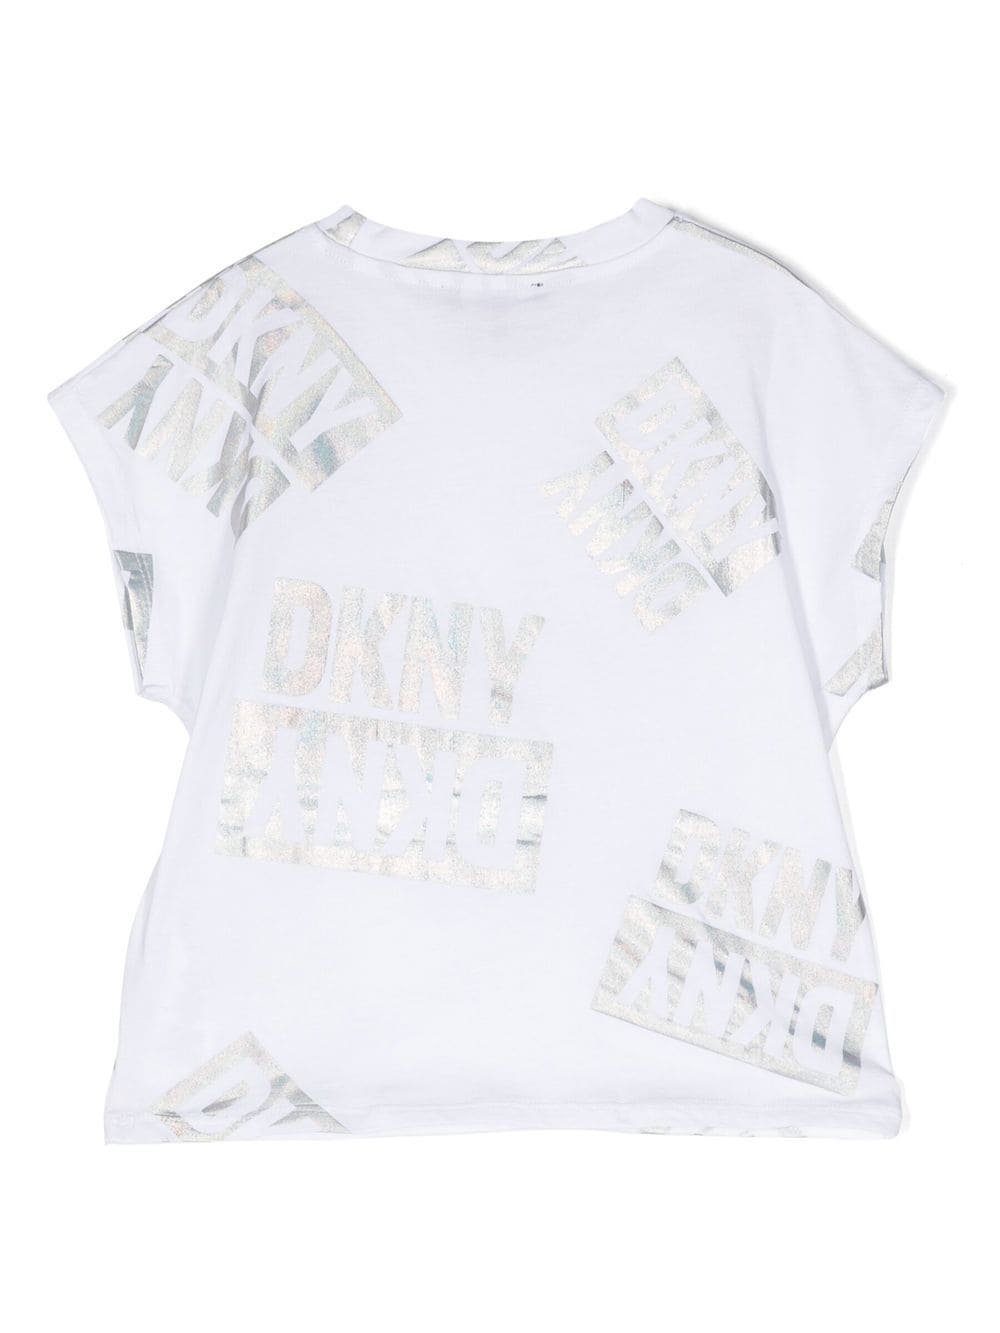 Dkny Kids T-shirt met logoprint - Wit